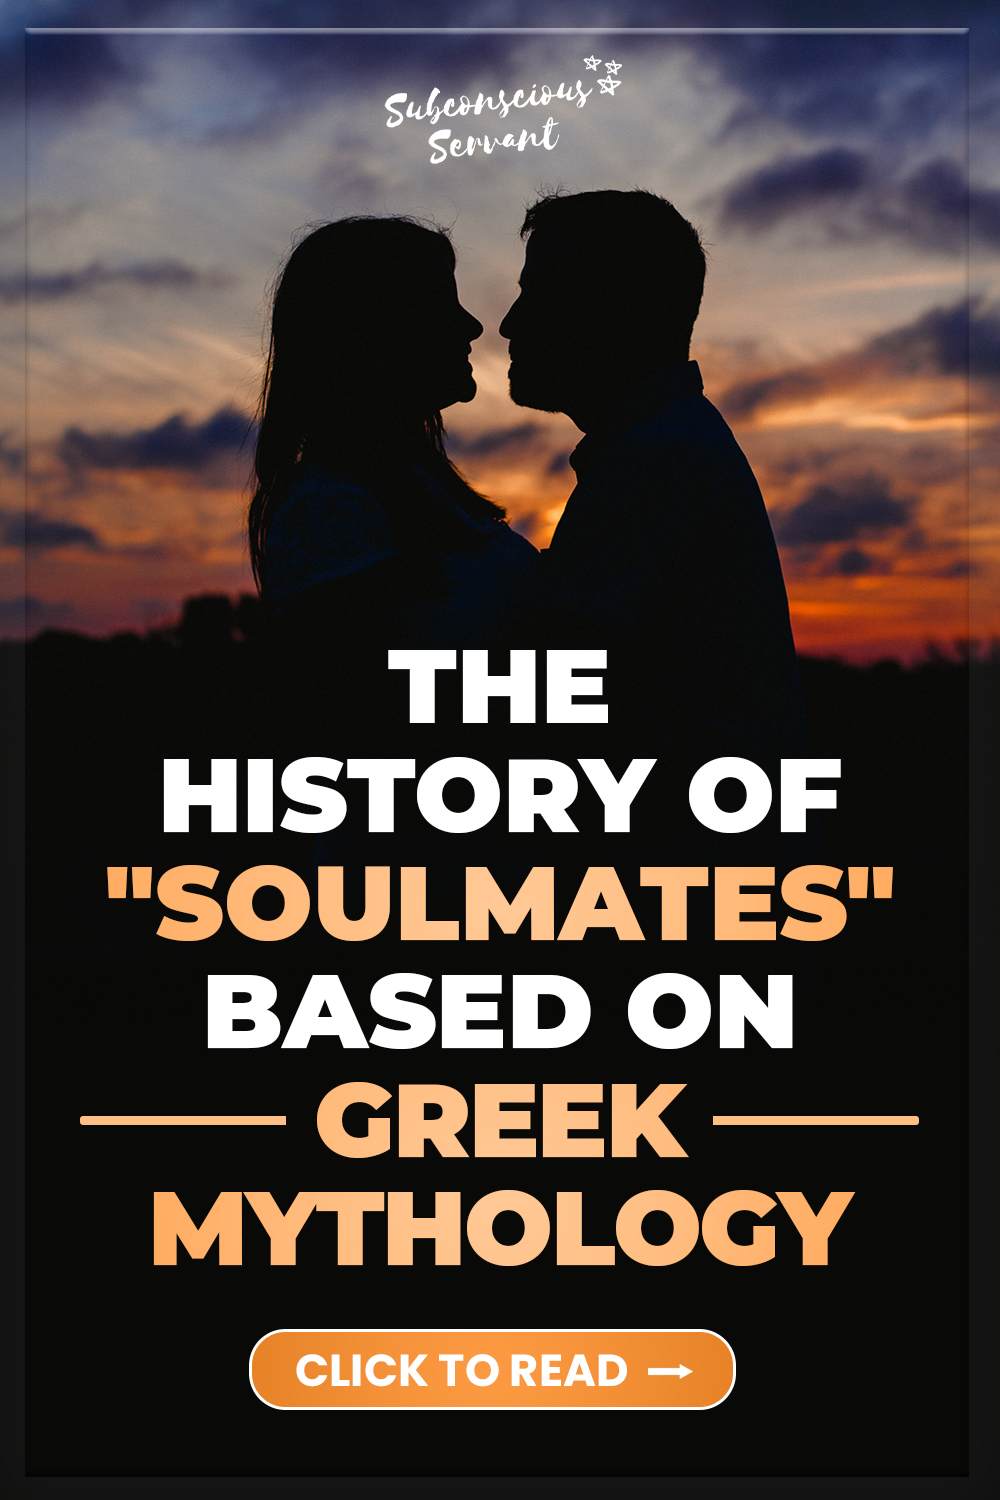 The History of Soulmates Based on Greek Mythology